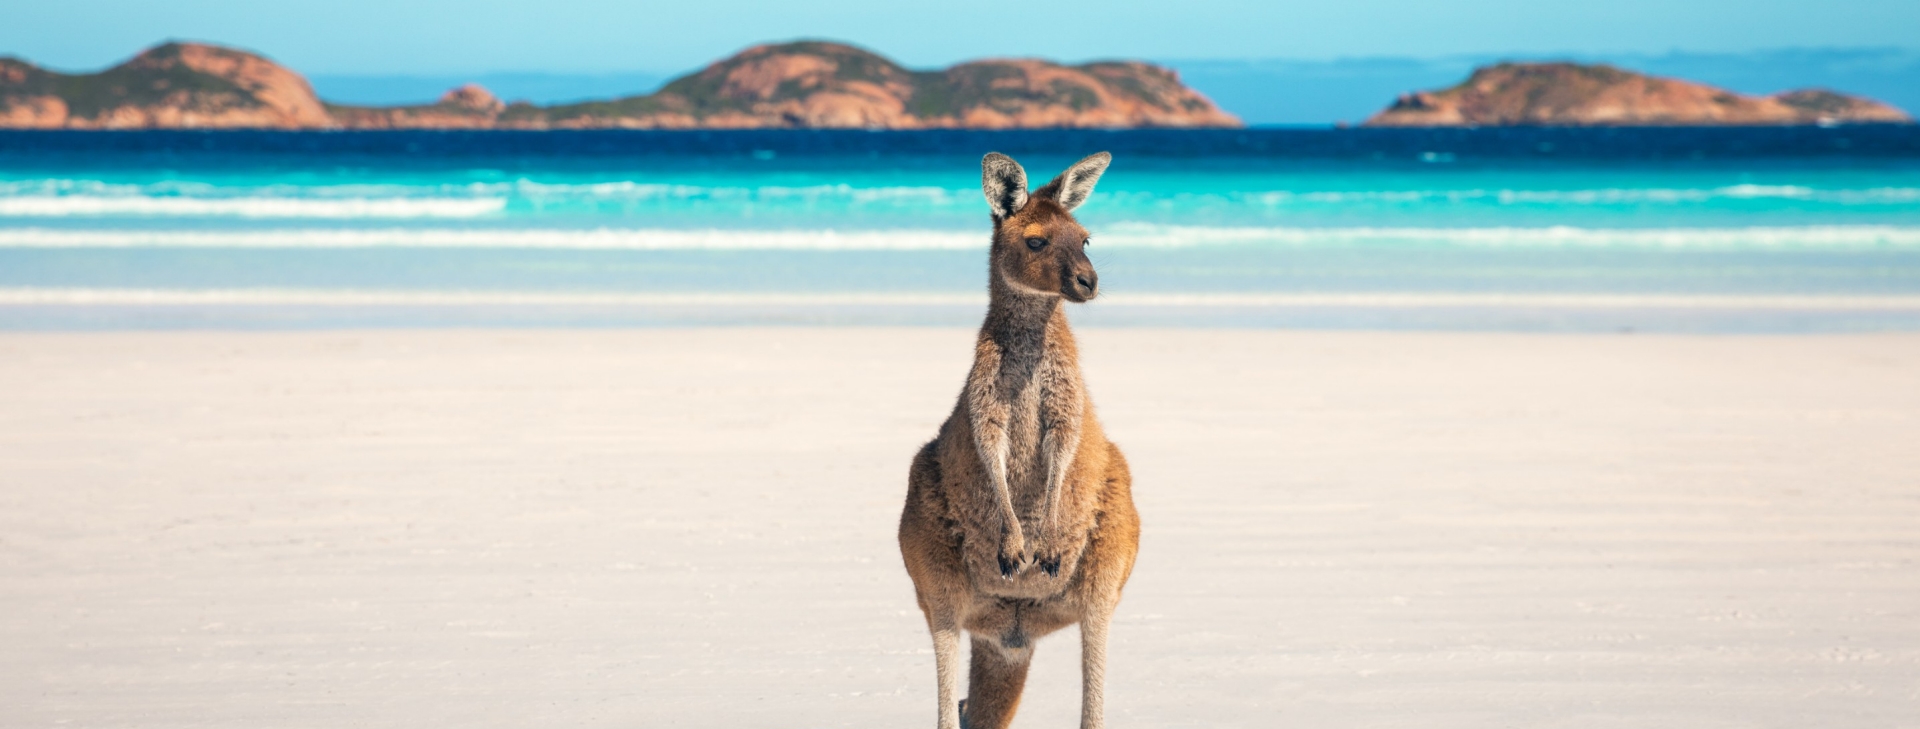 悉尼七十二小时精彩之旅 - 澳大利亚旅游局